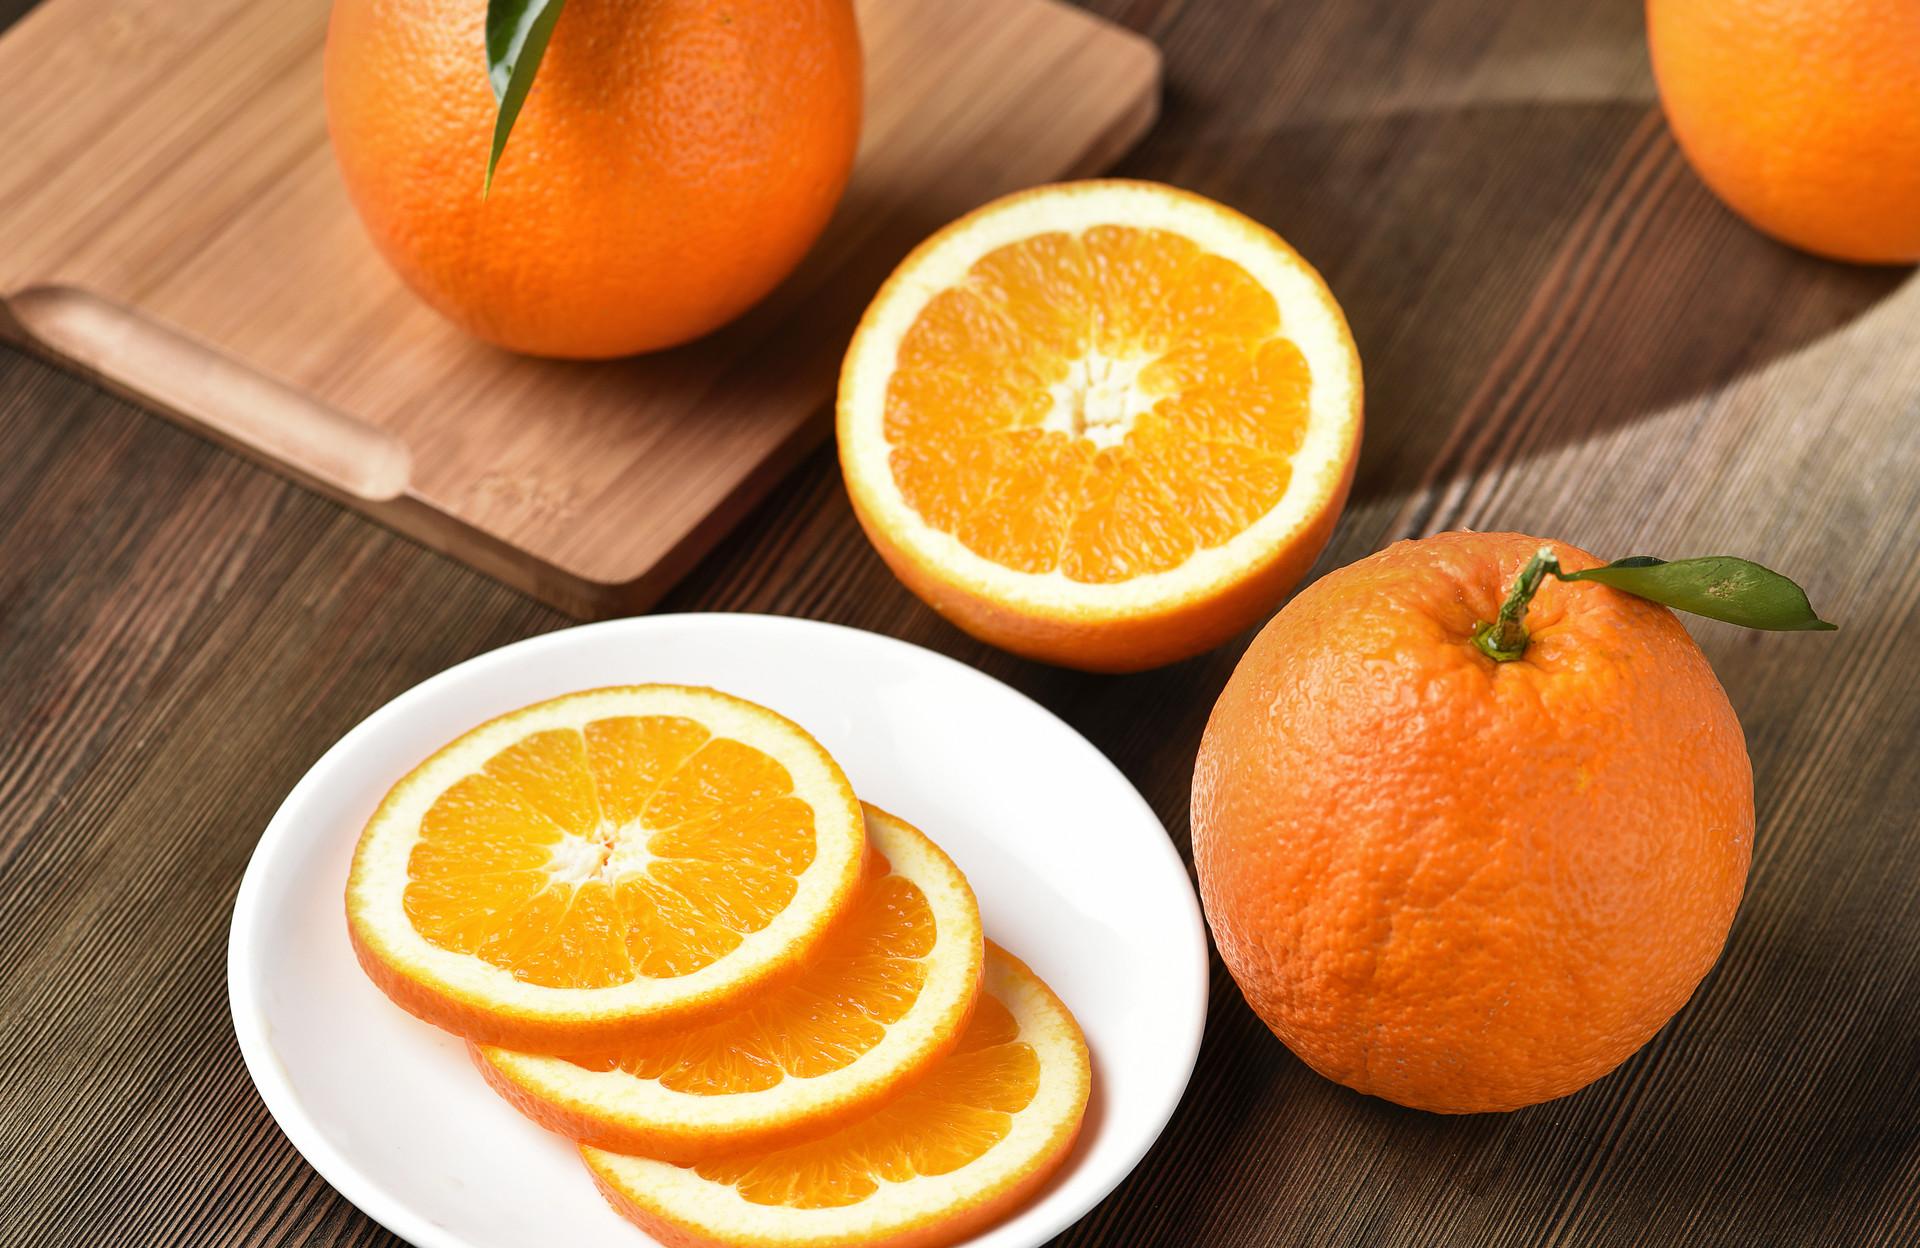 冰糖橙可以保存多久